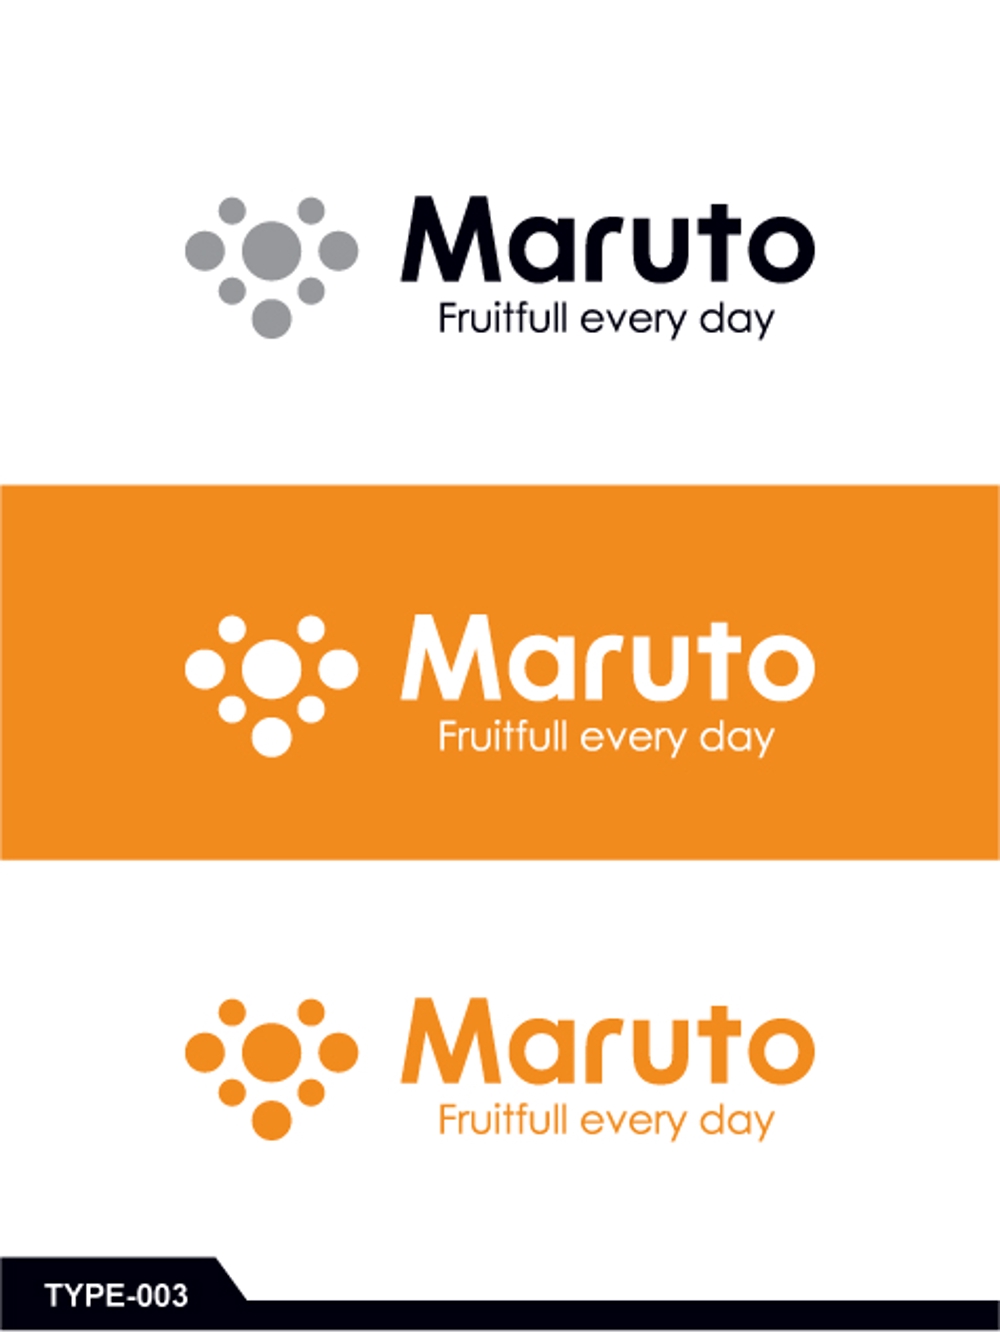 総合フルーツ販売店「Maruto」の企業ロゴ